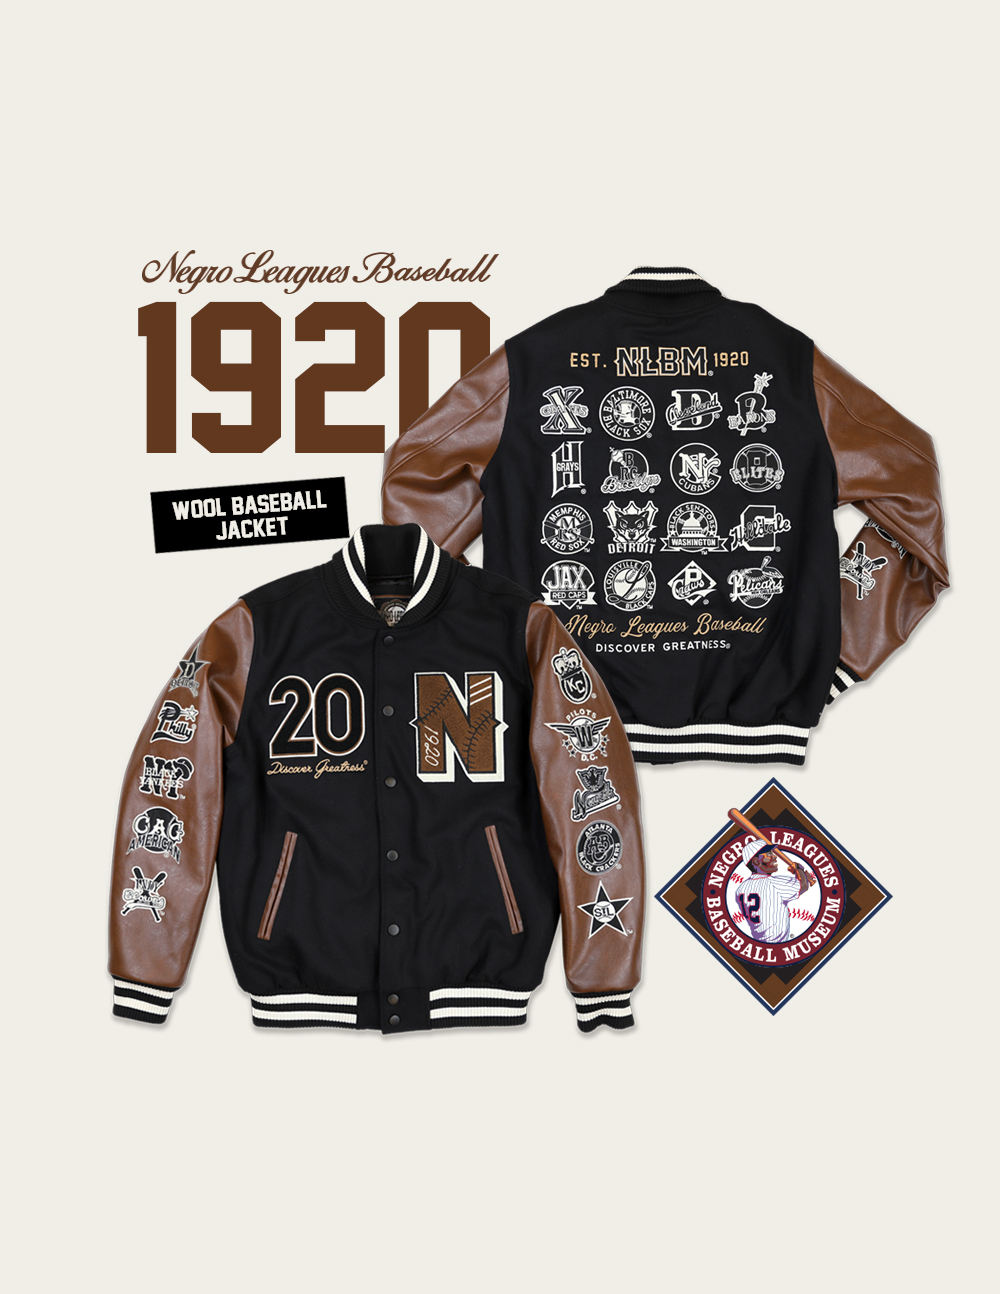 Negro League Baseball Wool Jacket